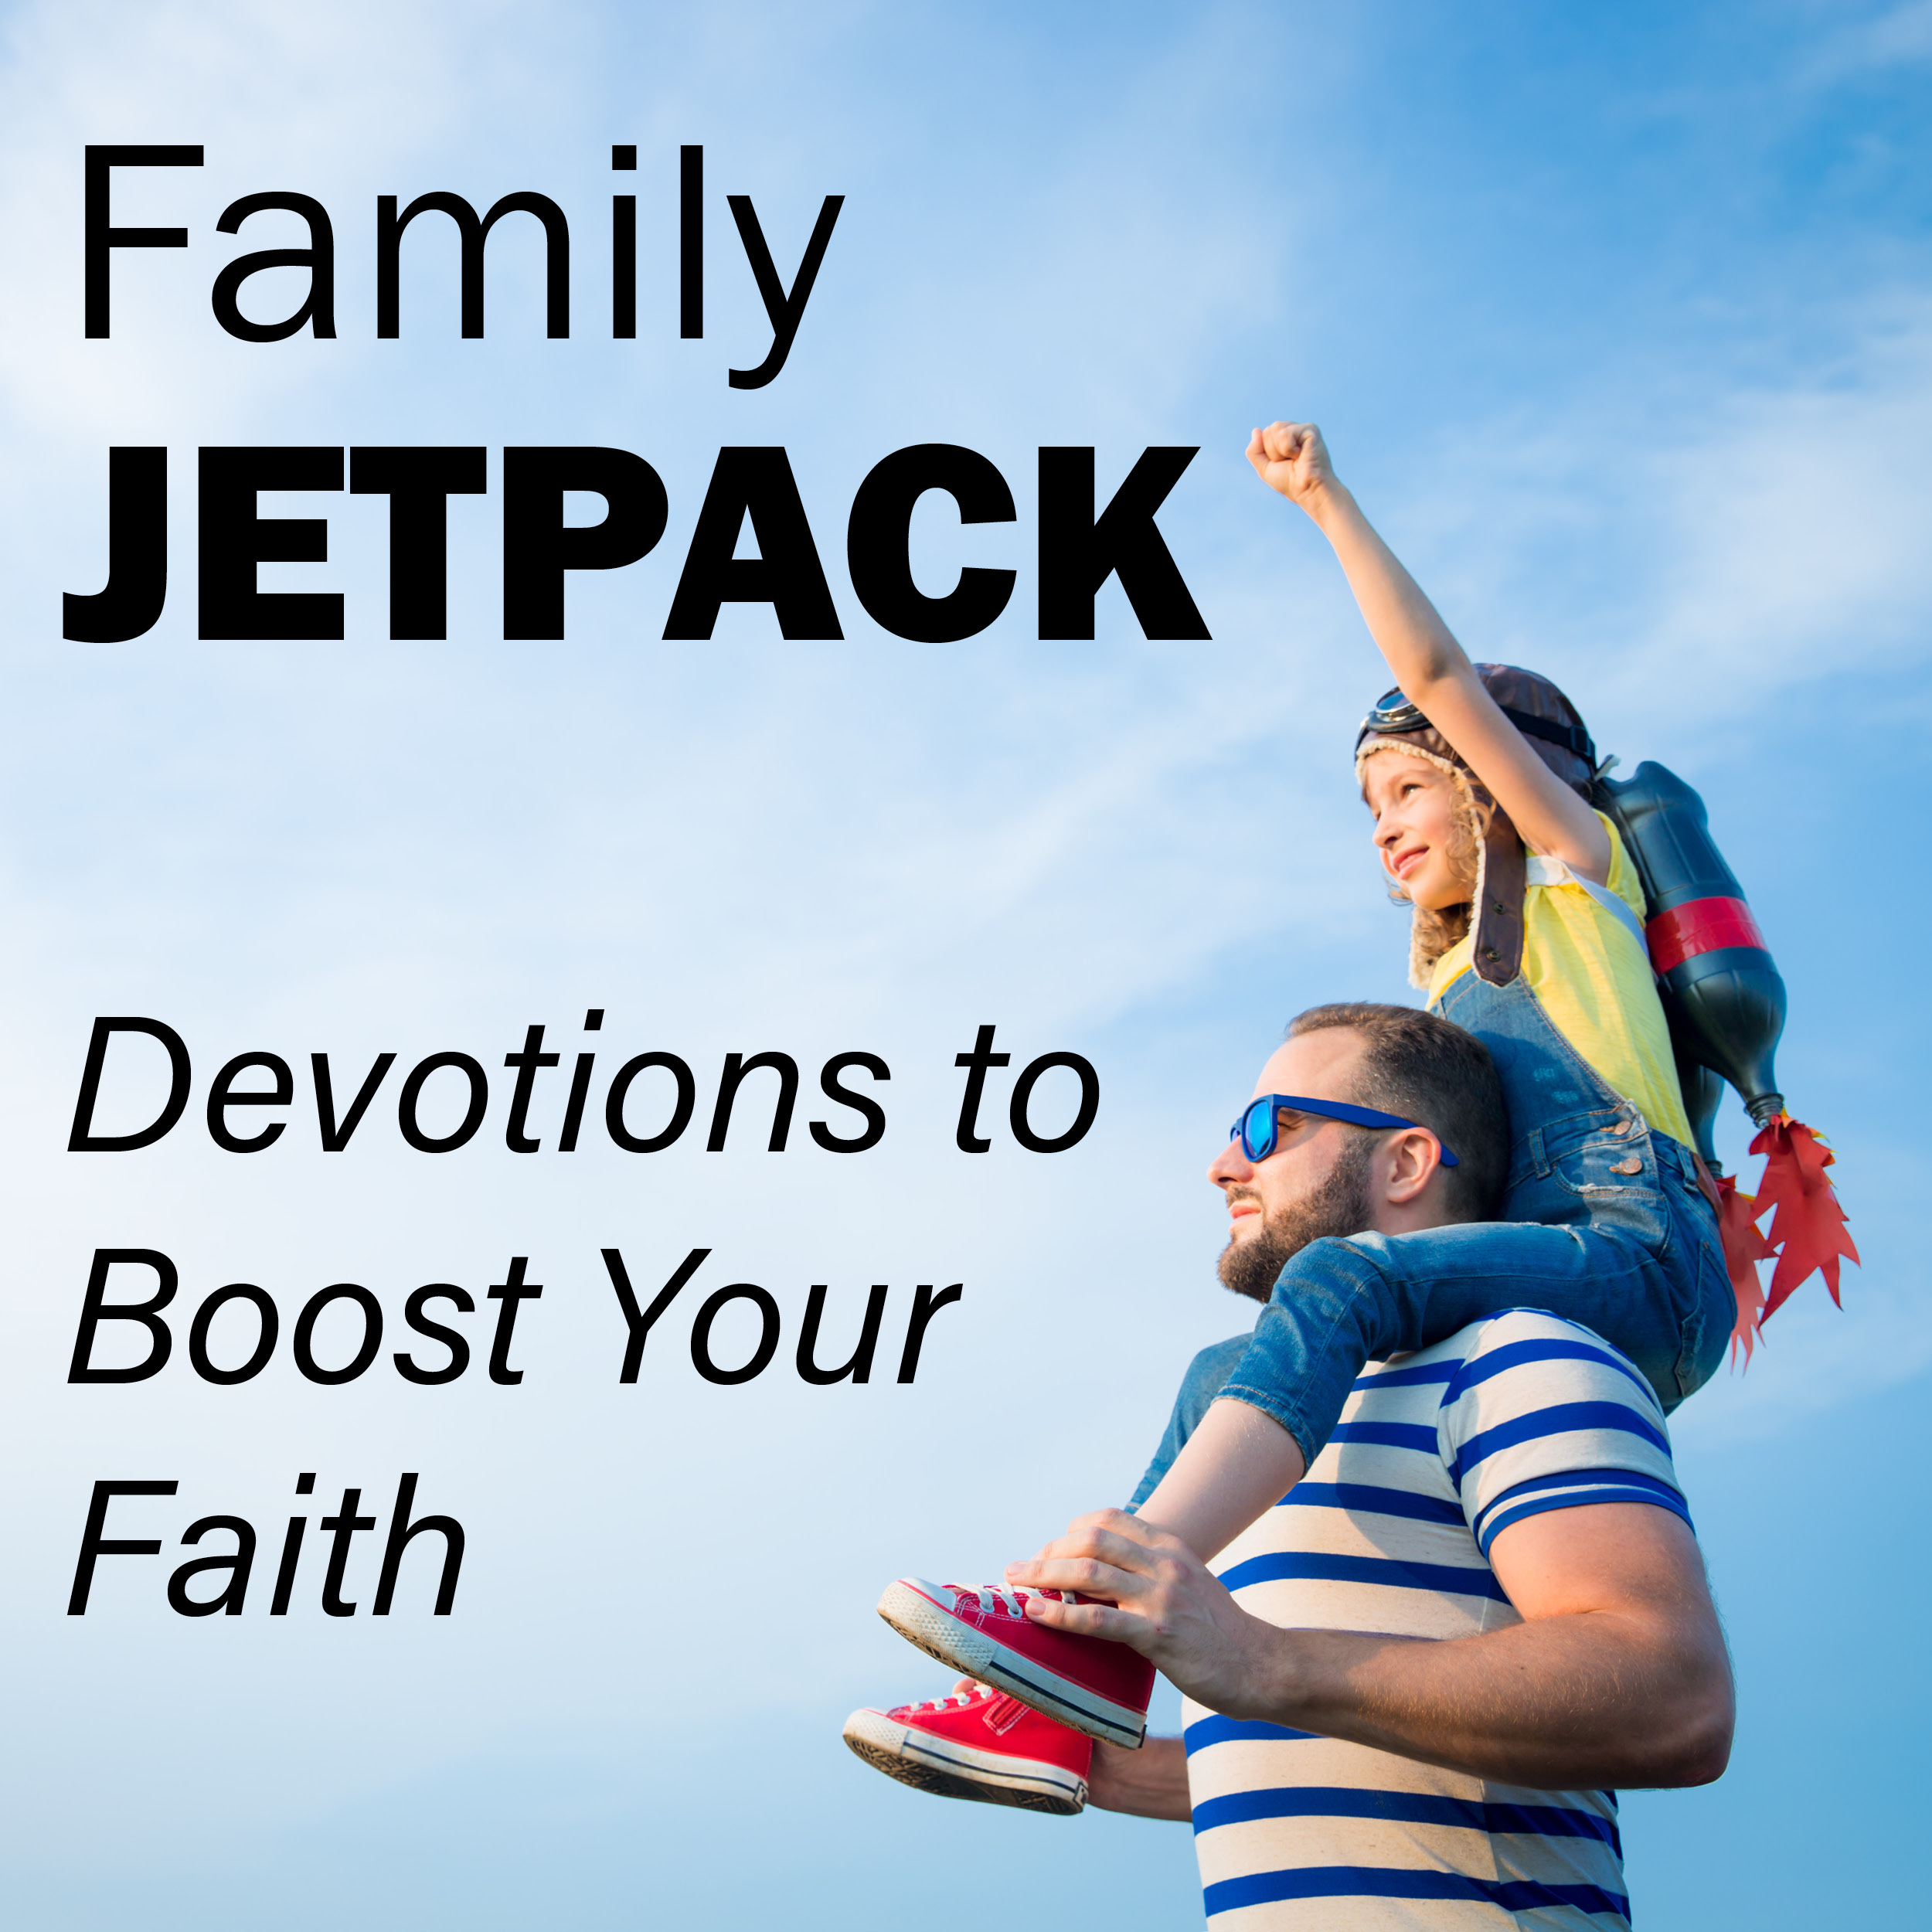 Family Jetpack